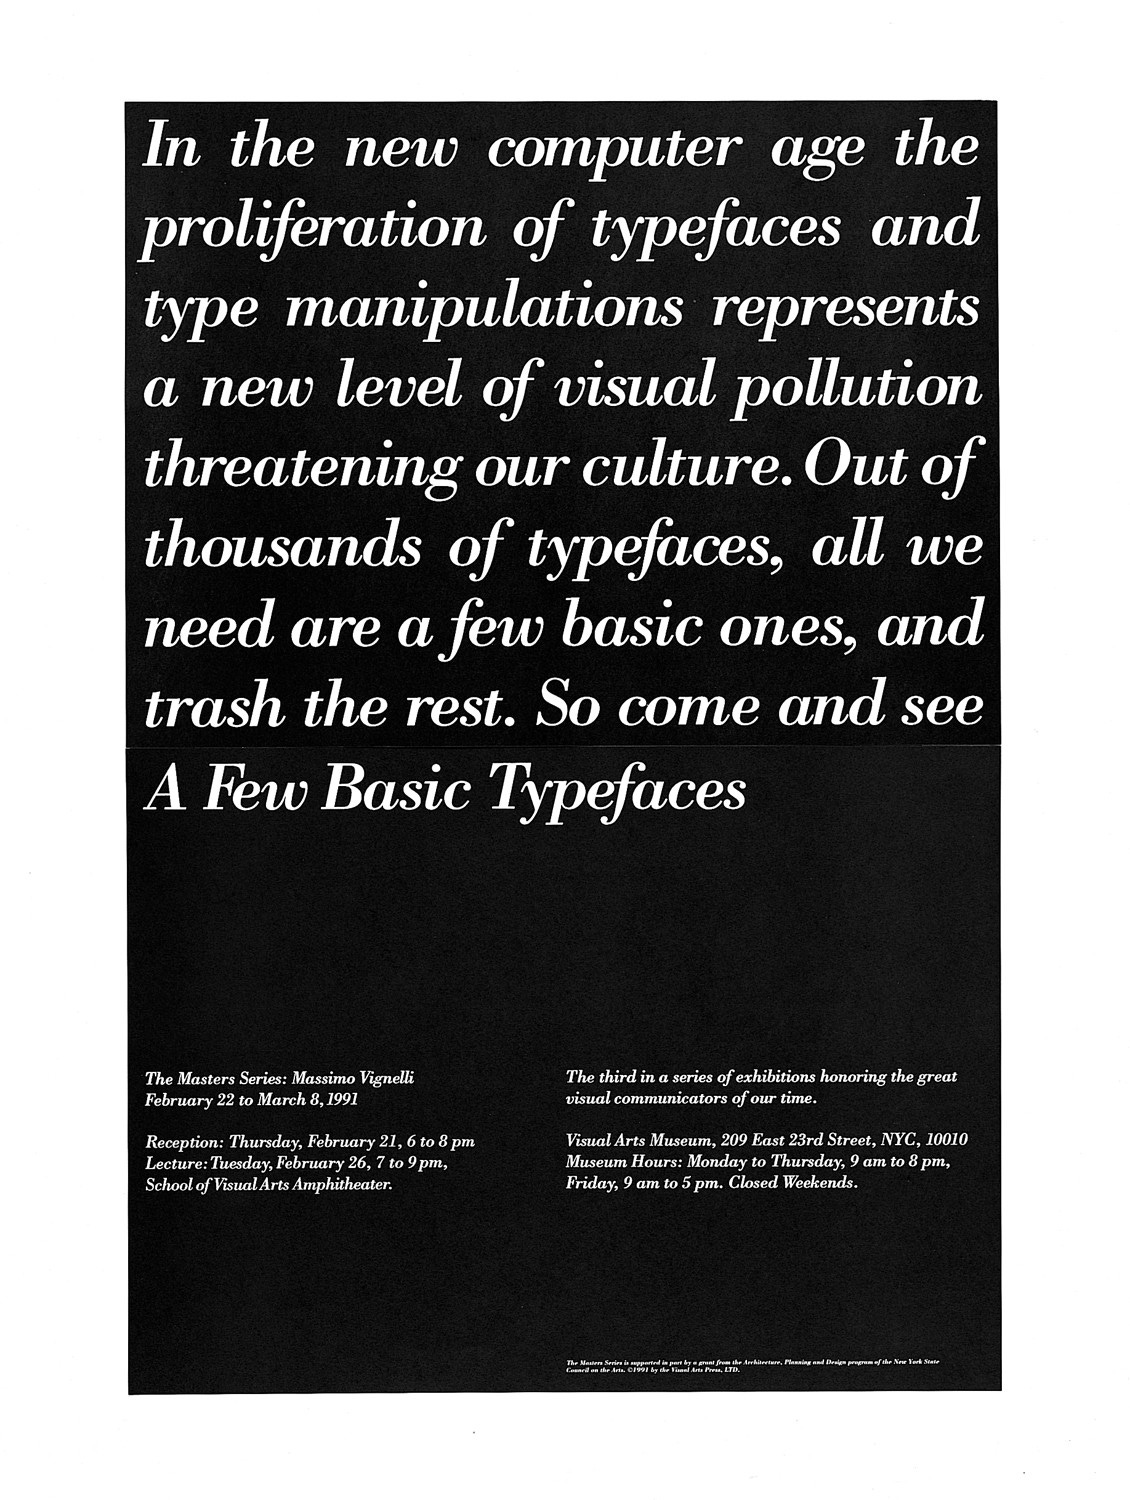 “Few Basic Typefaces”, pôster do estúdio Vignelli Associates para a exibição de projetos do designer Massimo Vignelli na School of Visual Arts, NY.